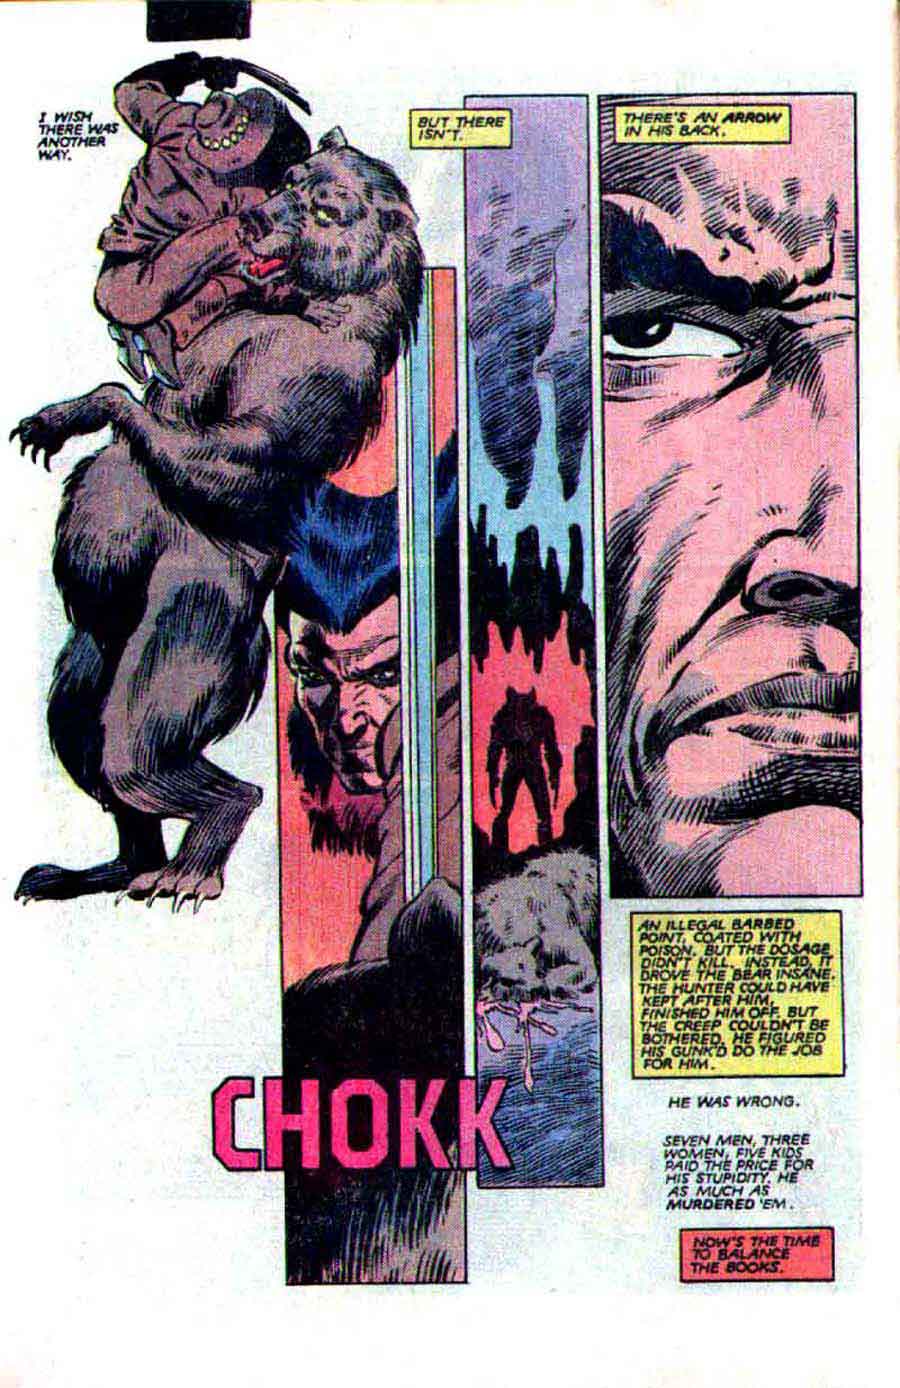 Wolverine v1 #1 1980s marvel comic book page art by Frank Miller